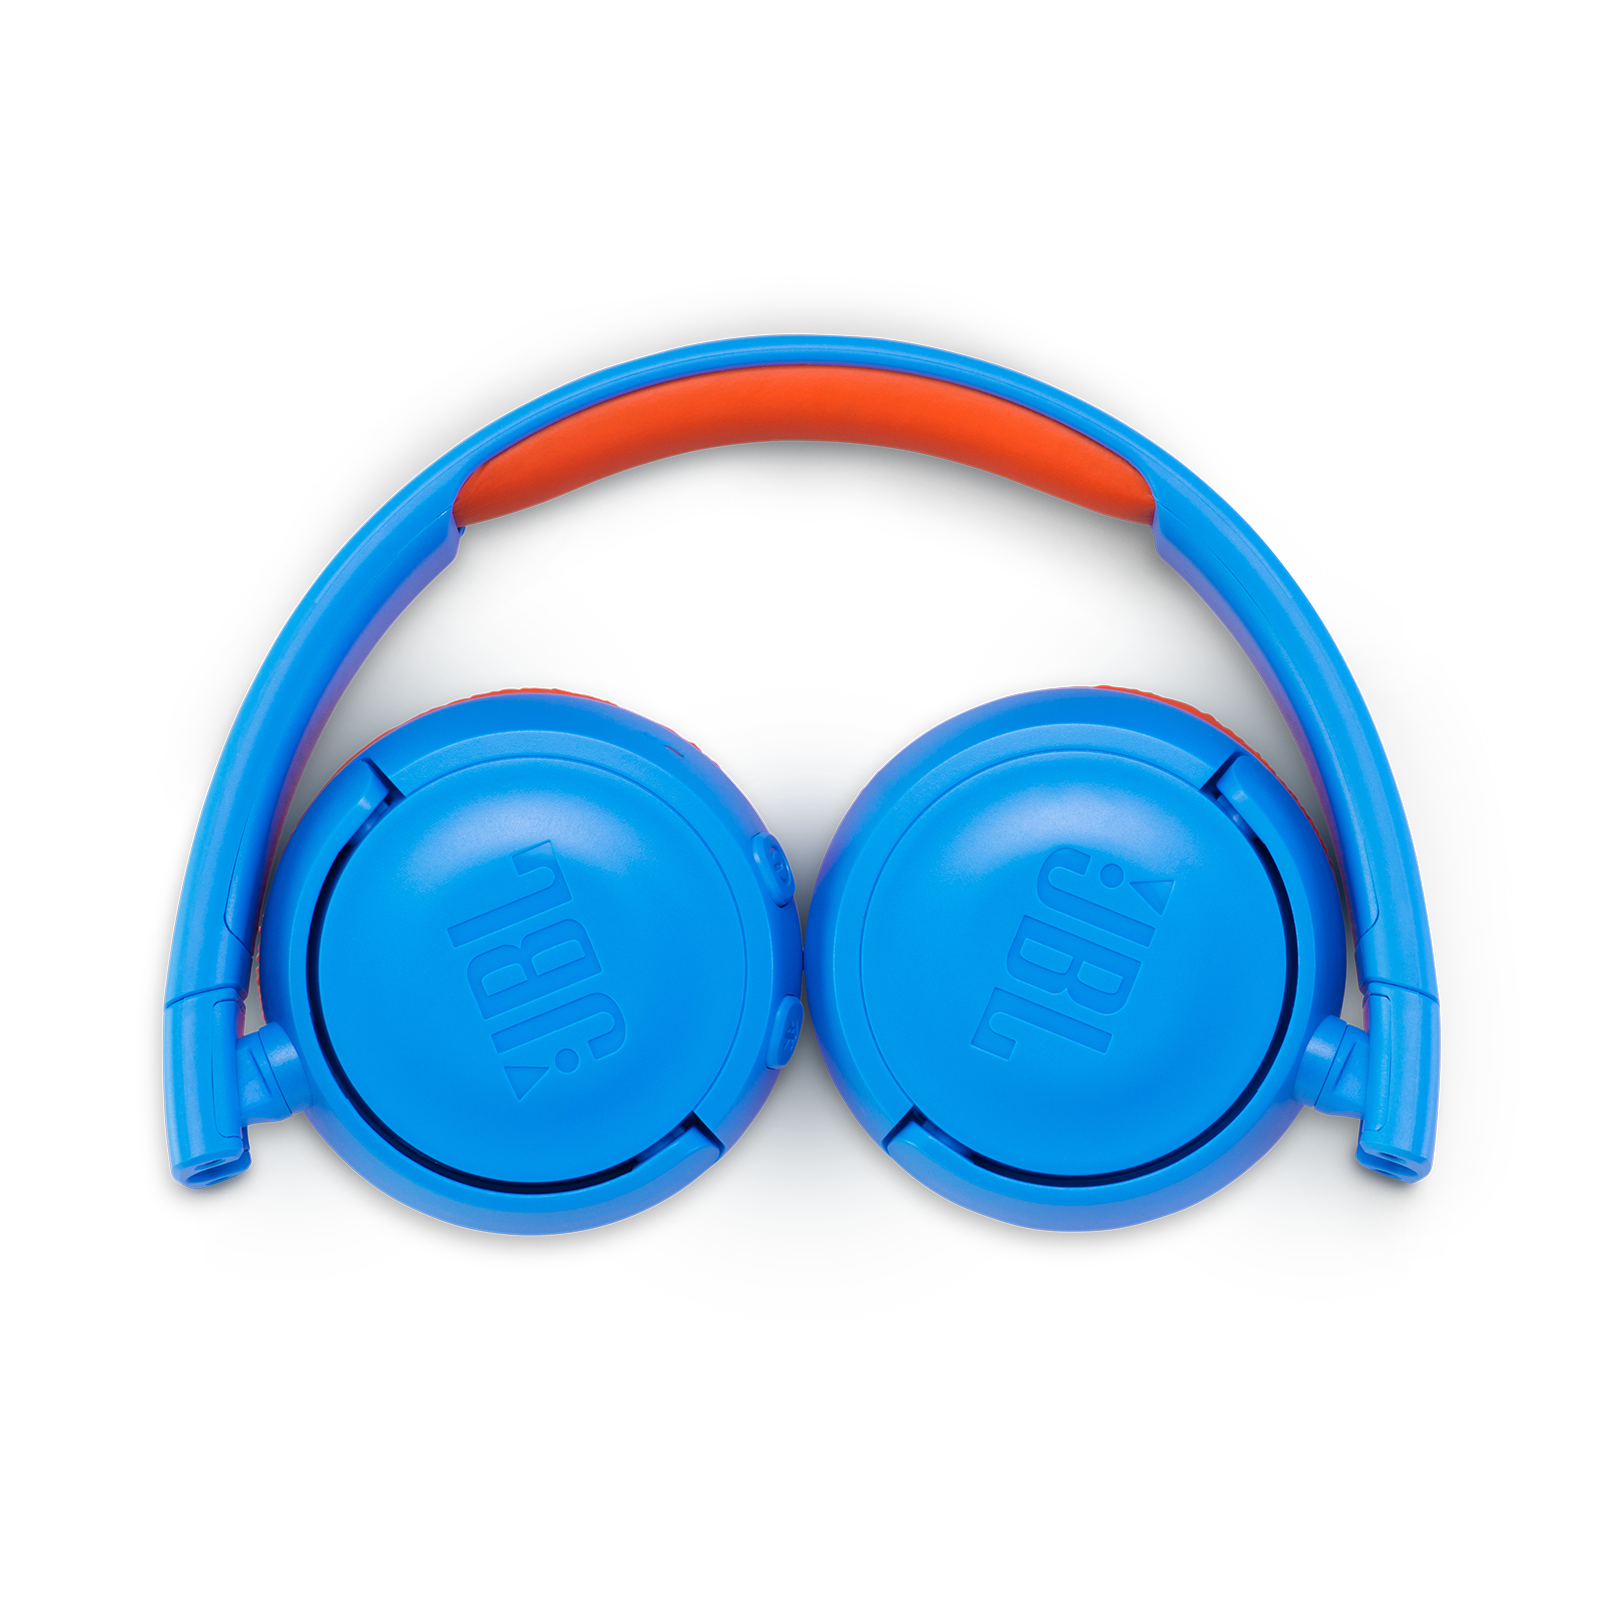 Casti pentru On Ear JBL JR300, Wireless, Bluetooth, Autonomie 15 ore, Albastru - eMAG.ro